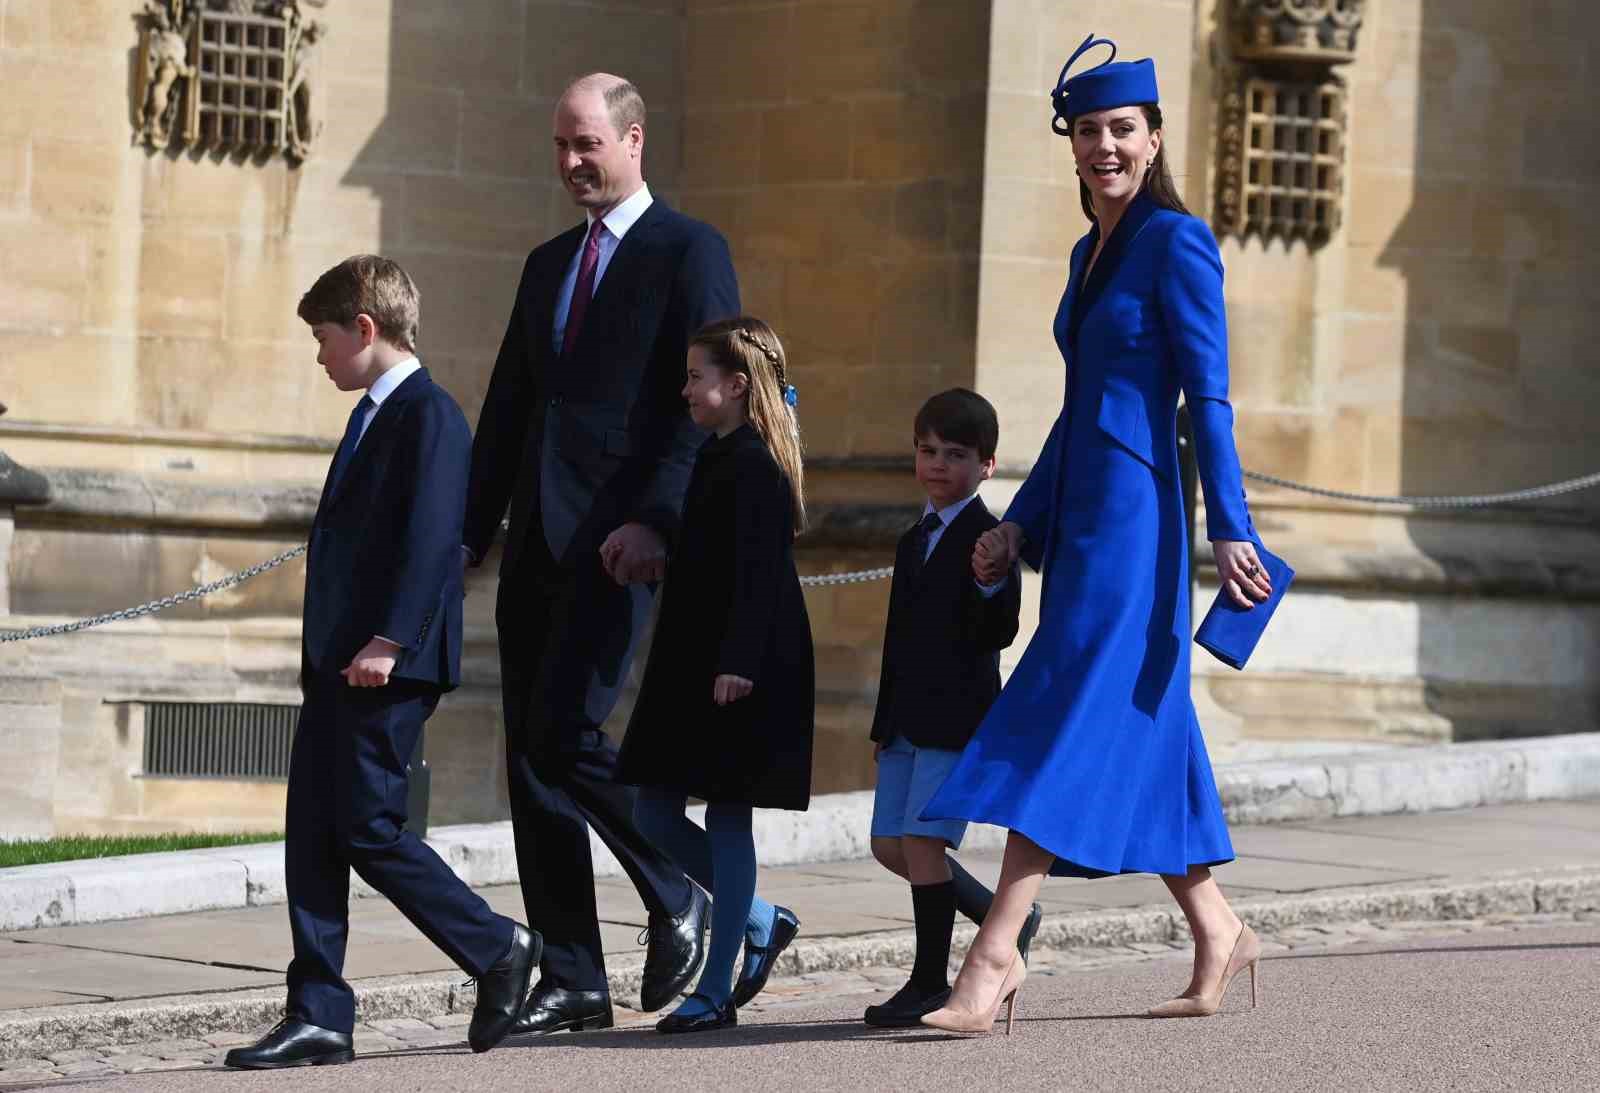 Kate Middleton, Galler Prensi William’ın eşi, ameliyat sonrası 2 hafta boyunca hastanede kalacak.